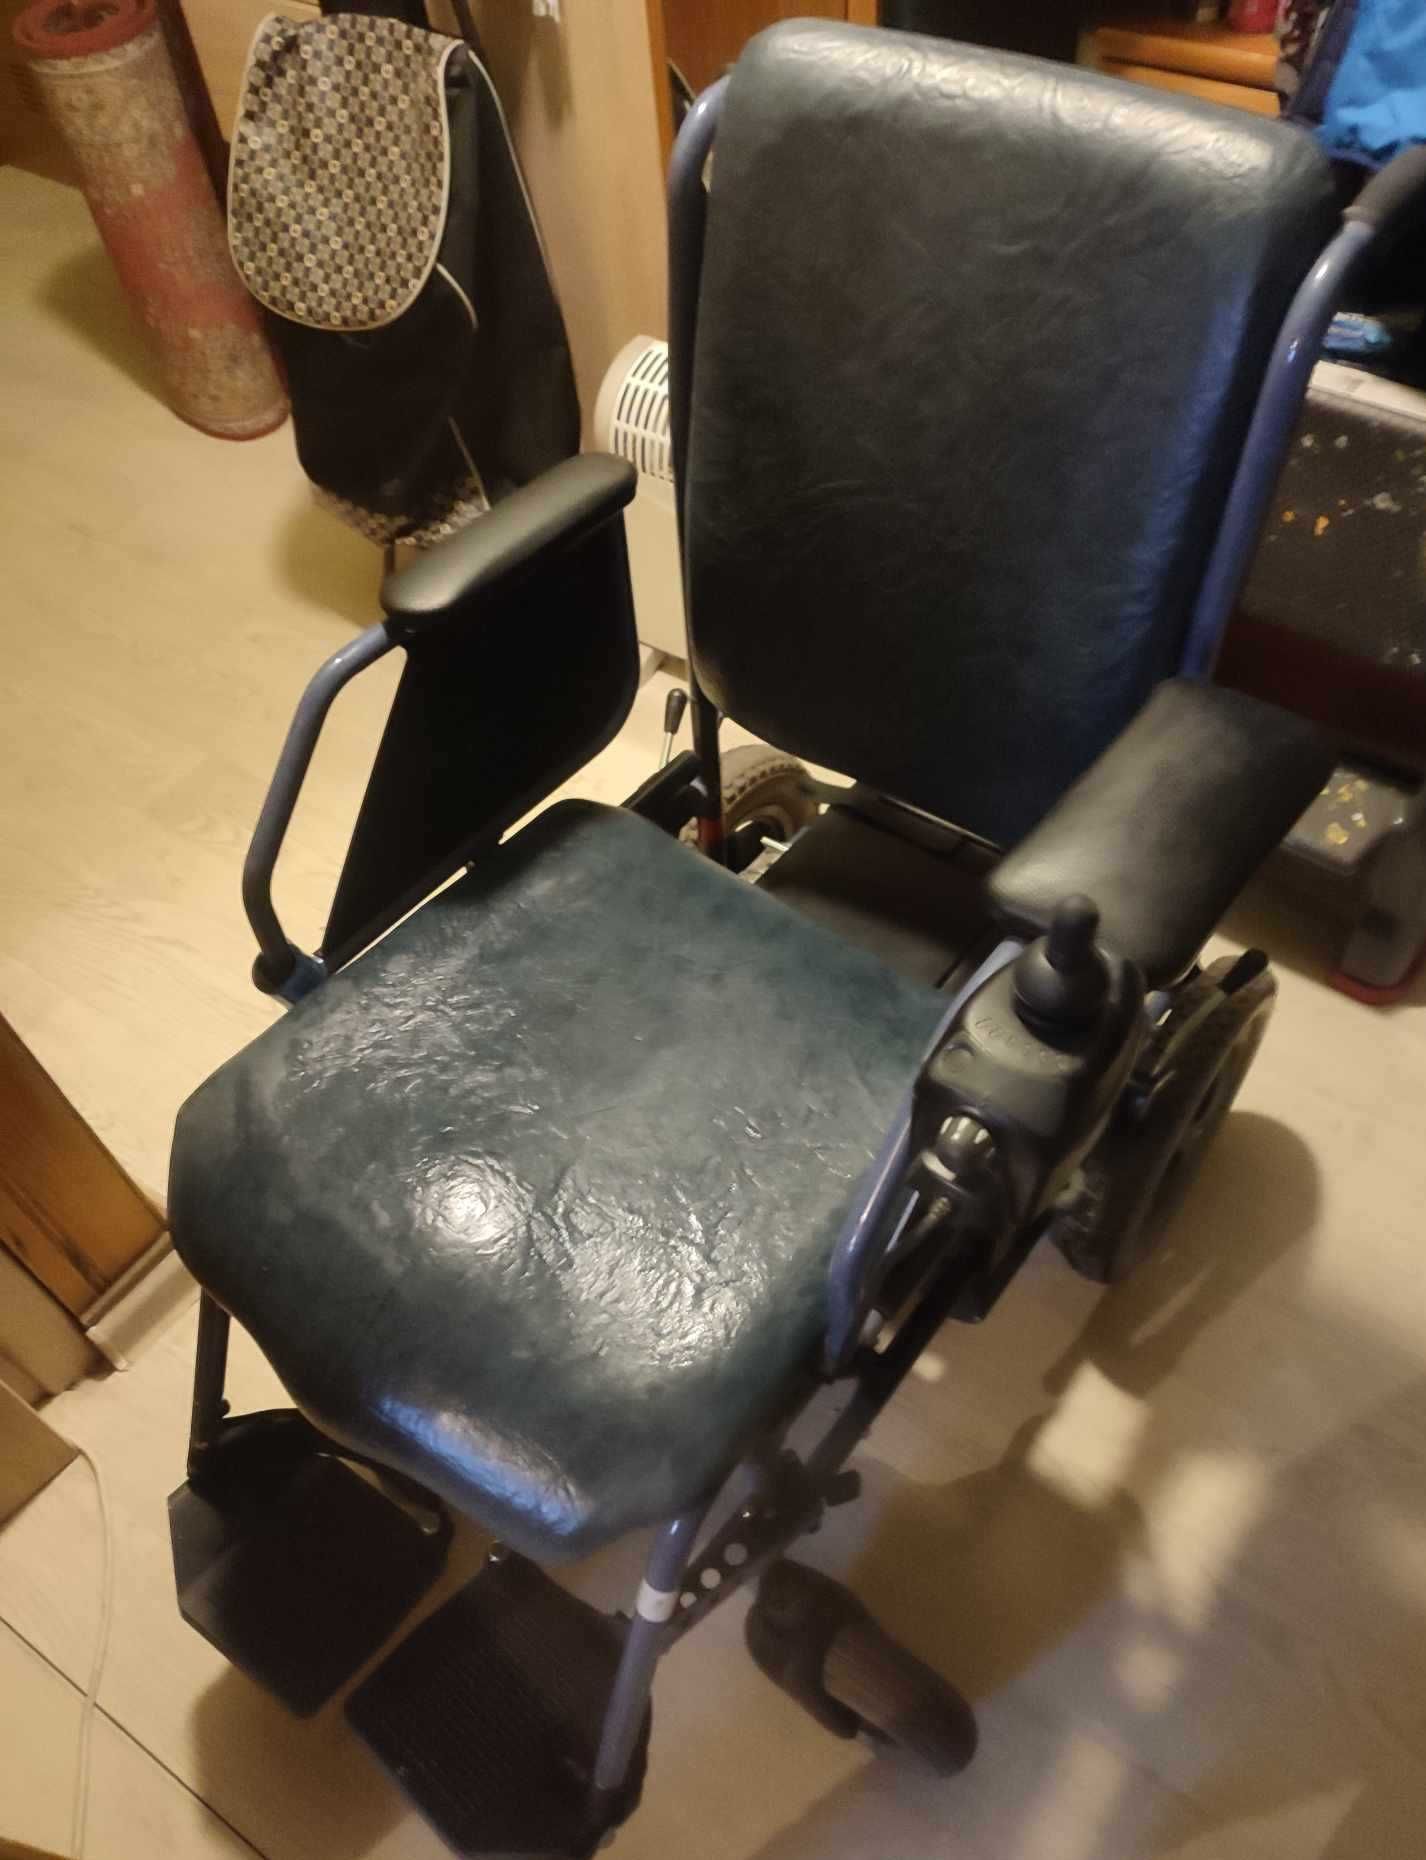 Piękny wózek inwalidzki. Serdecznie Polecam